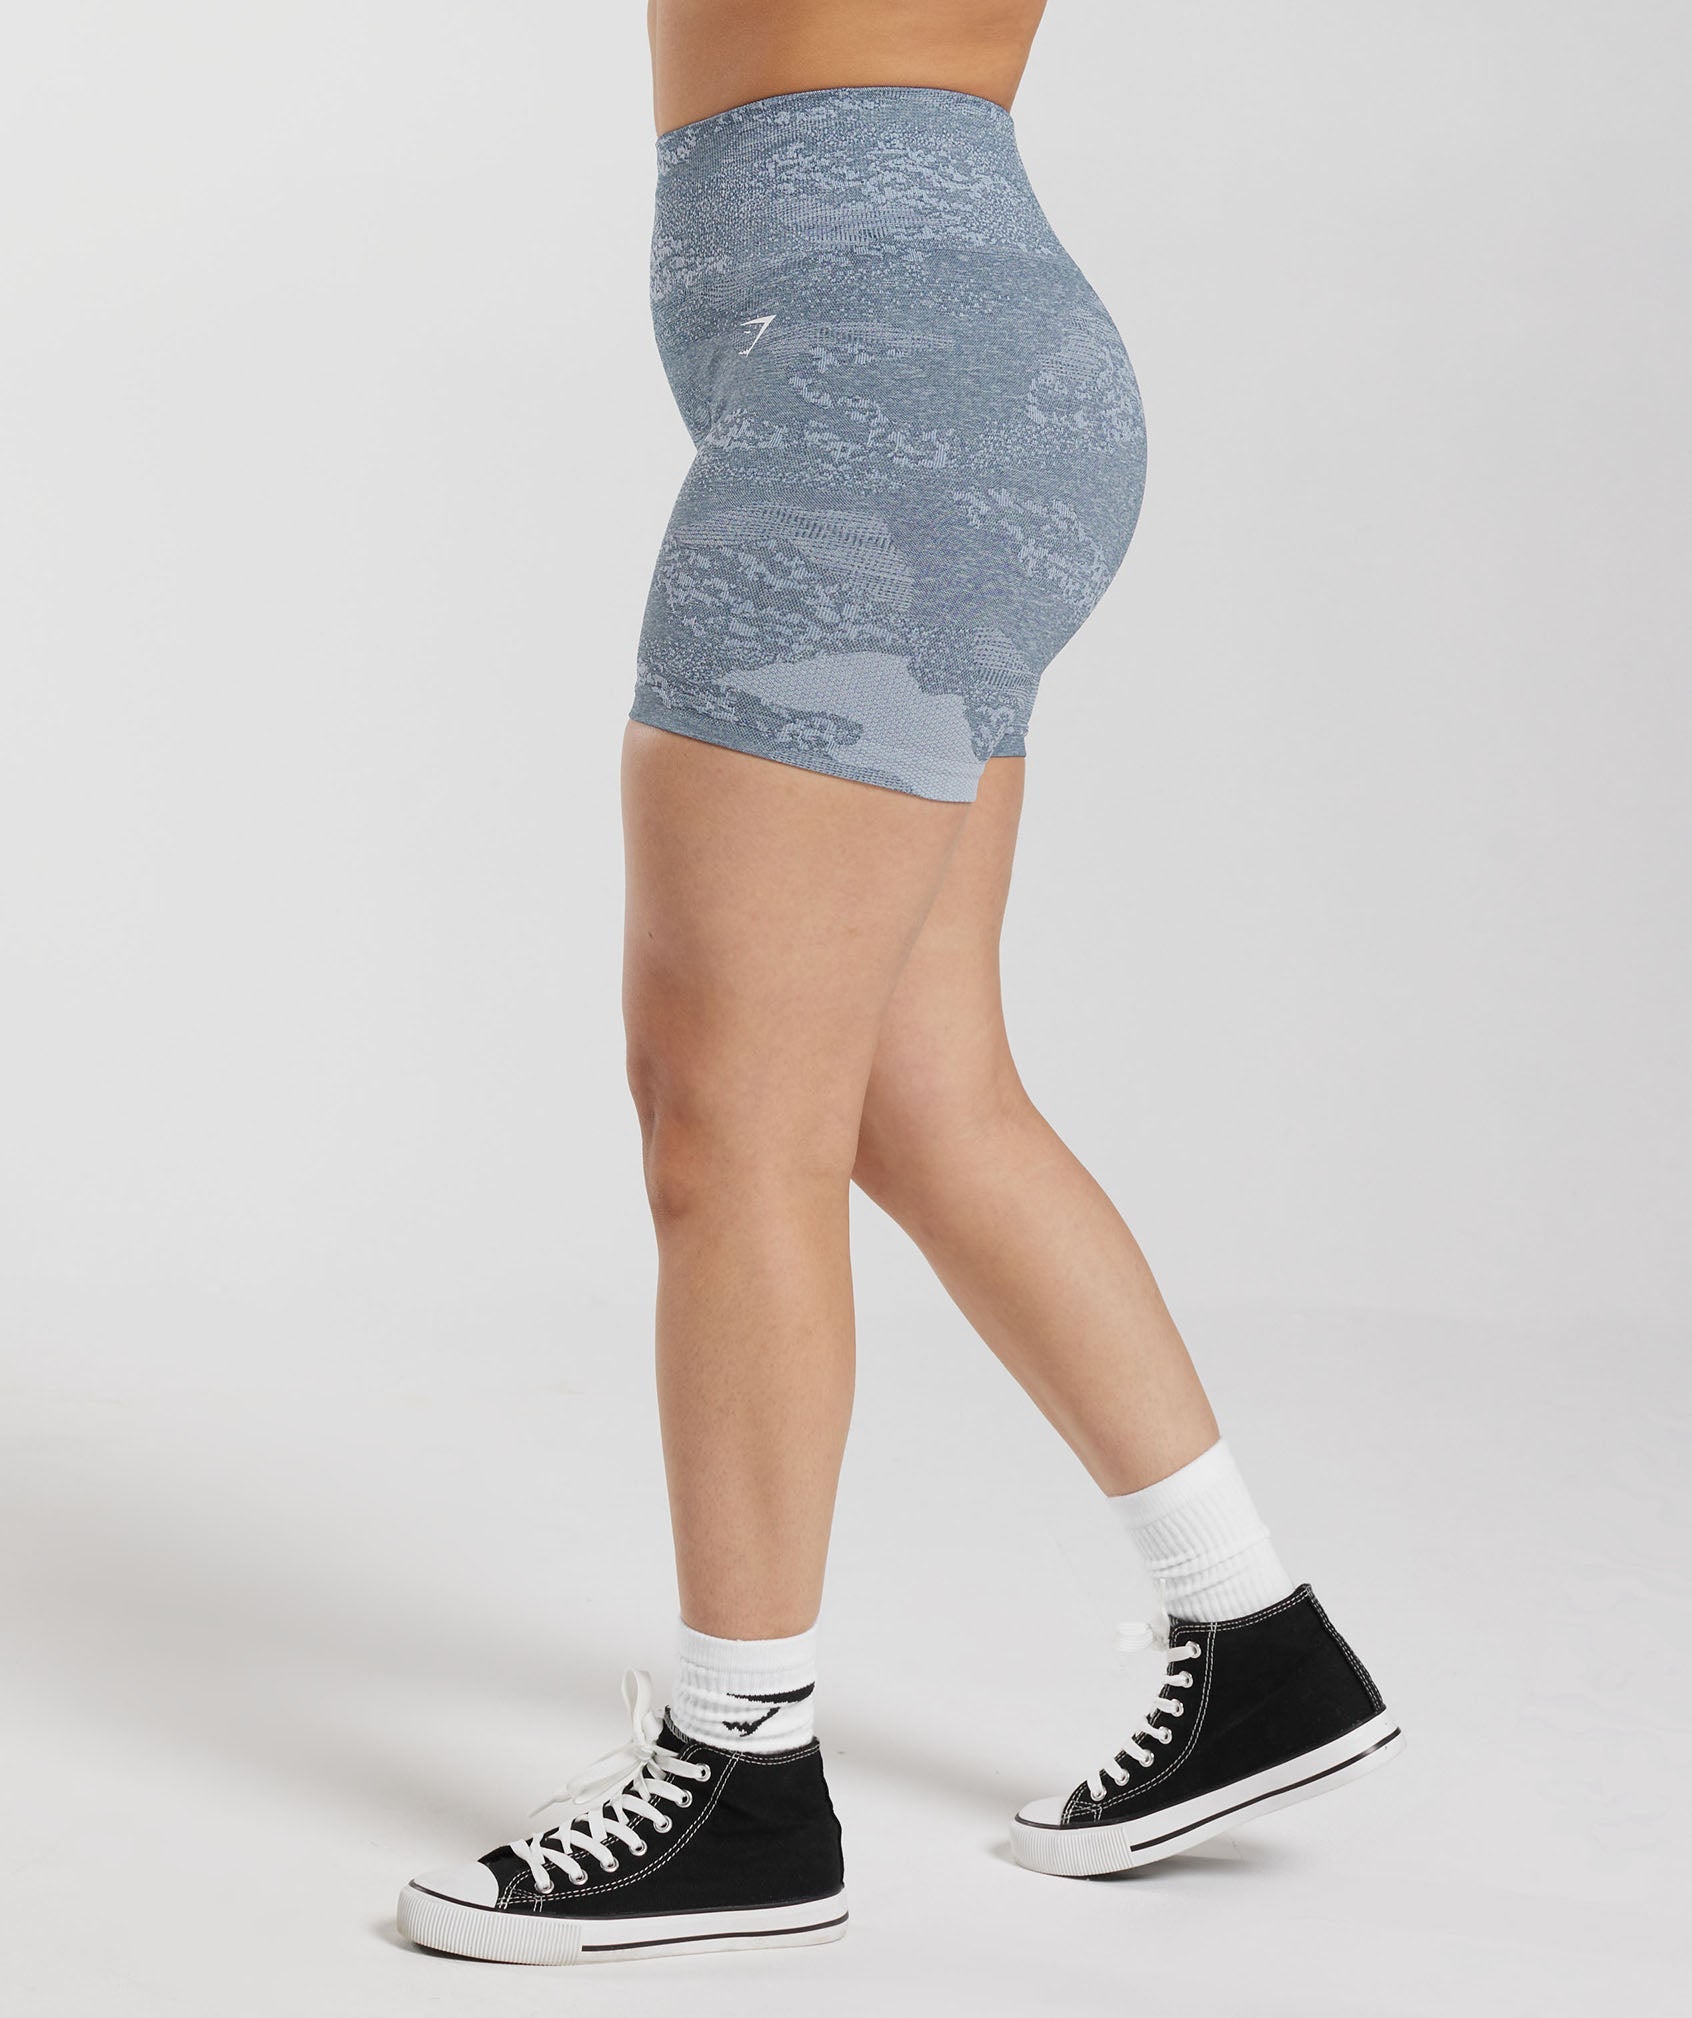 Gymshark Adapt camo seamless shorts Grey/Black Size large New